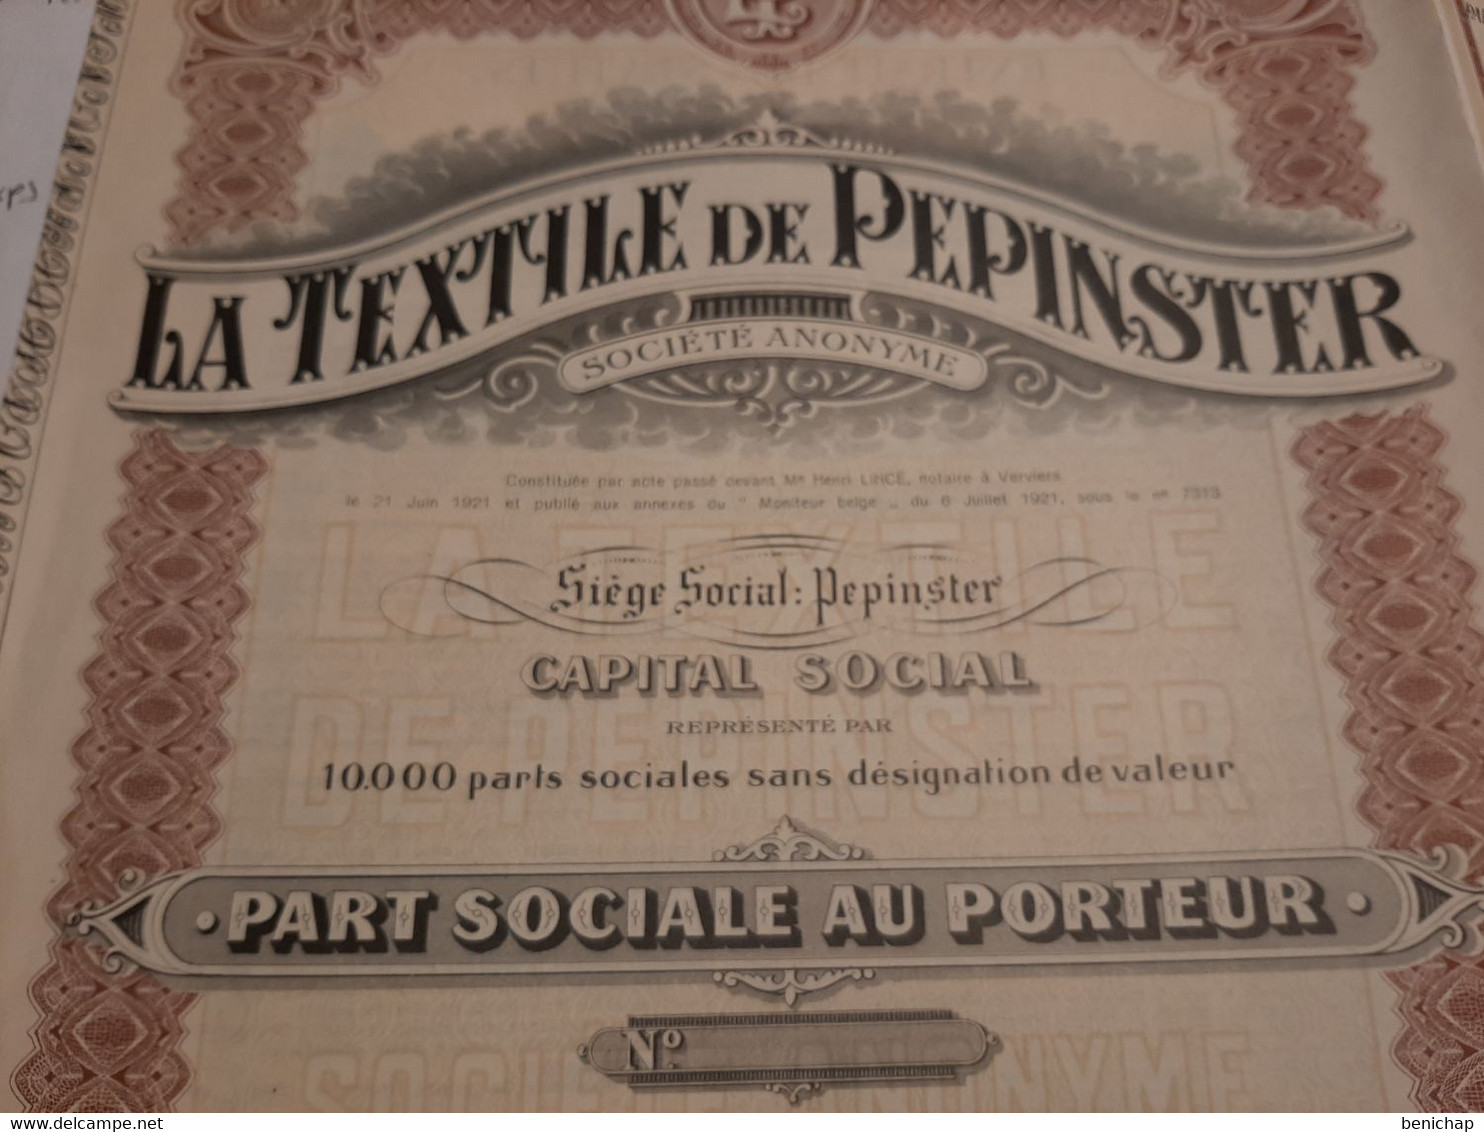 La Textile De Pepinster S.A. - Part Sociale Au Porteur - Pepinster 6 Juillet 1921. - Textiel